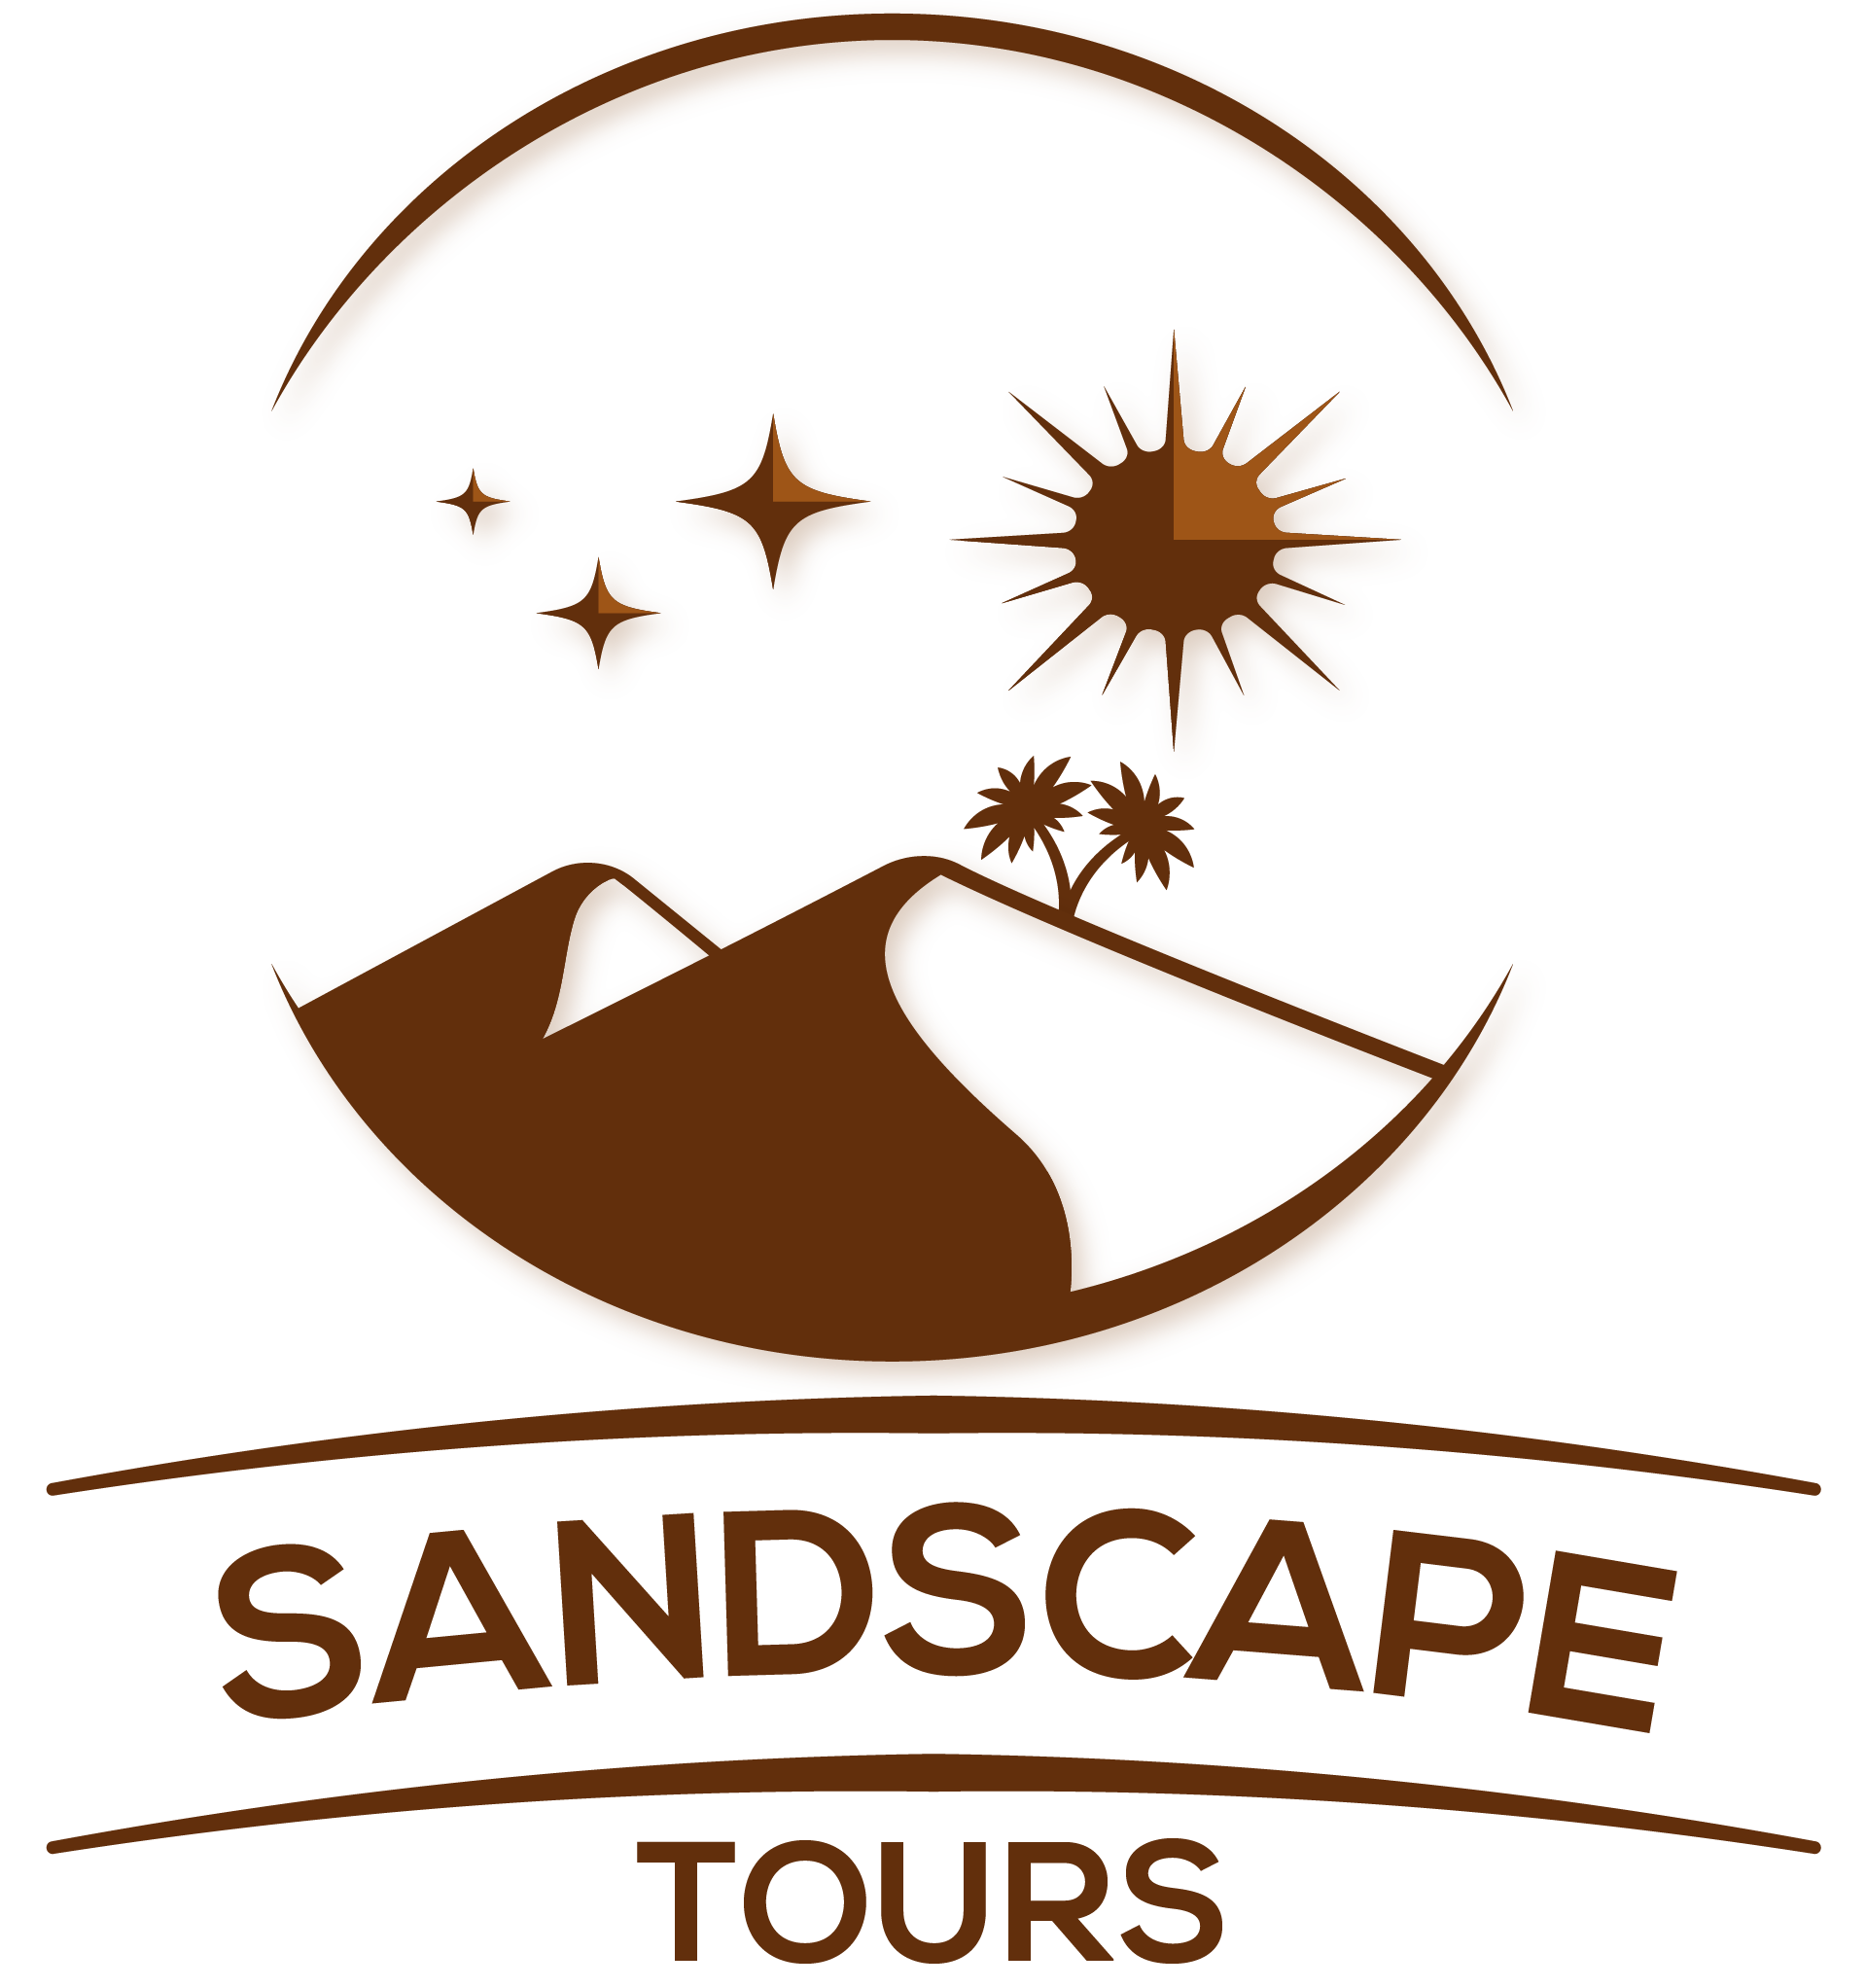 Sandscape Tours |   My account